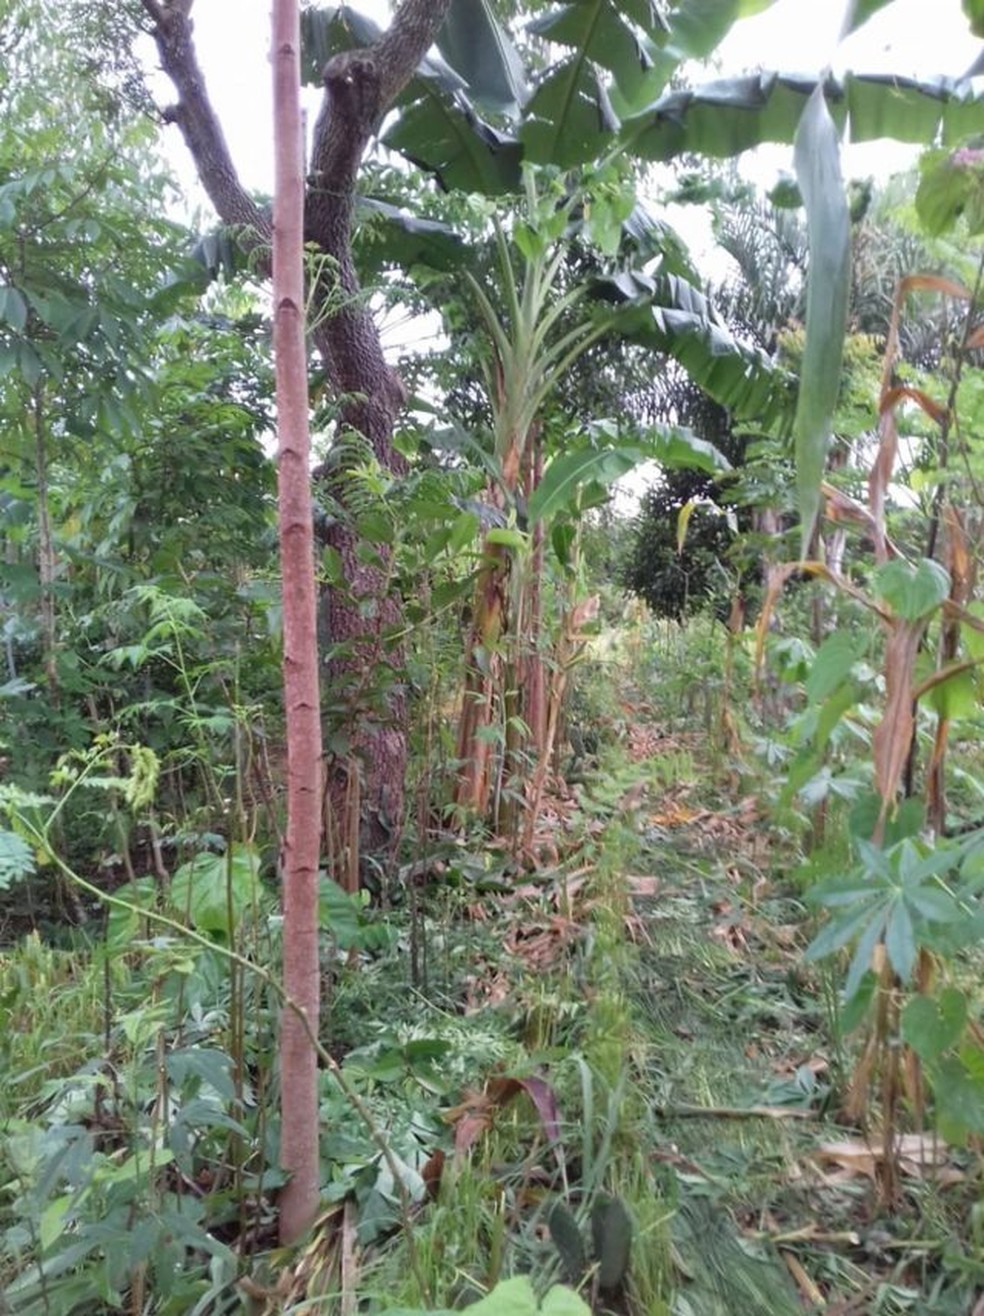 Sistema agroflorestal implantado h 15 anos em Exu, na regio semirida de Pernambuco  Foto: Arquivo pessoal